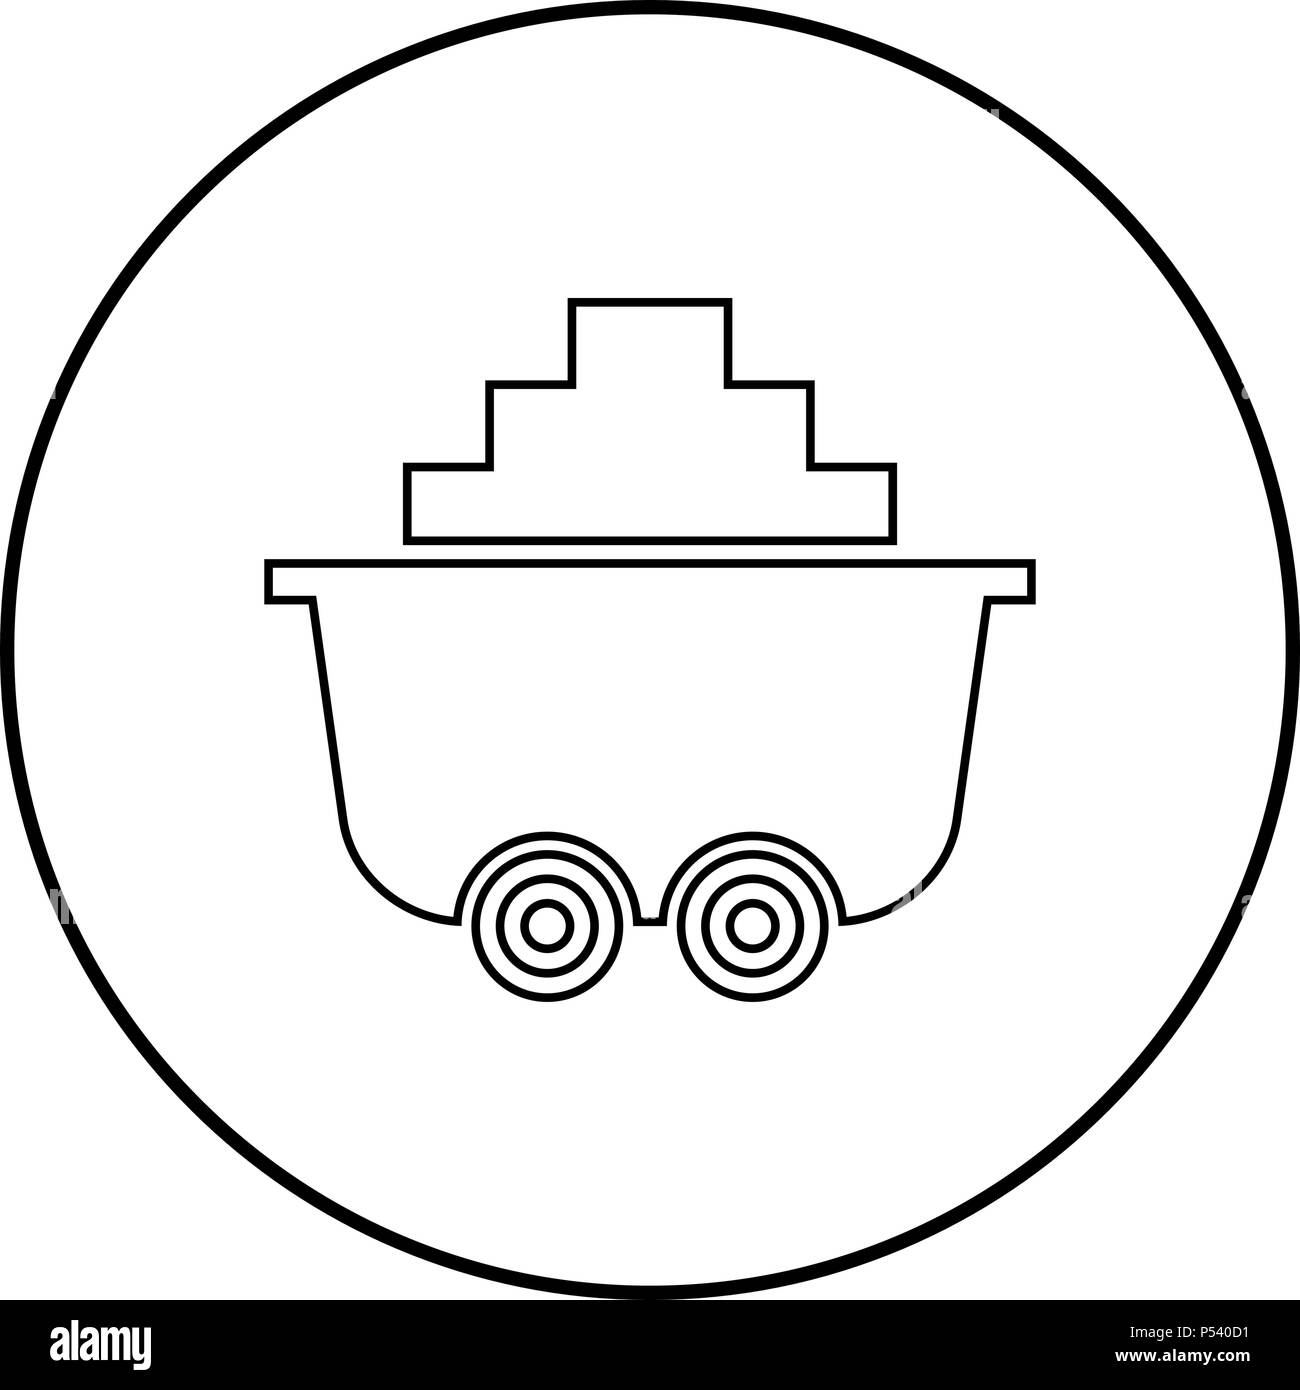 Carrito de mina de carbón o trolley de color negro en el icono de círculo esbozo Ilustración del Vector